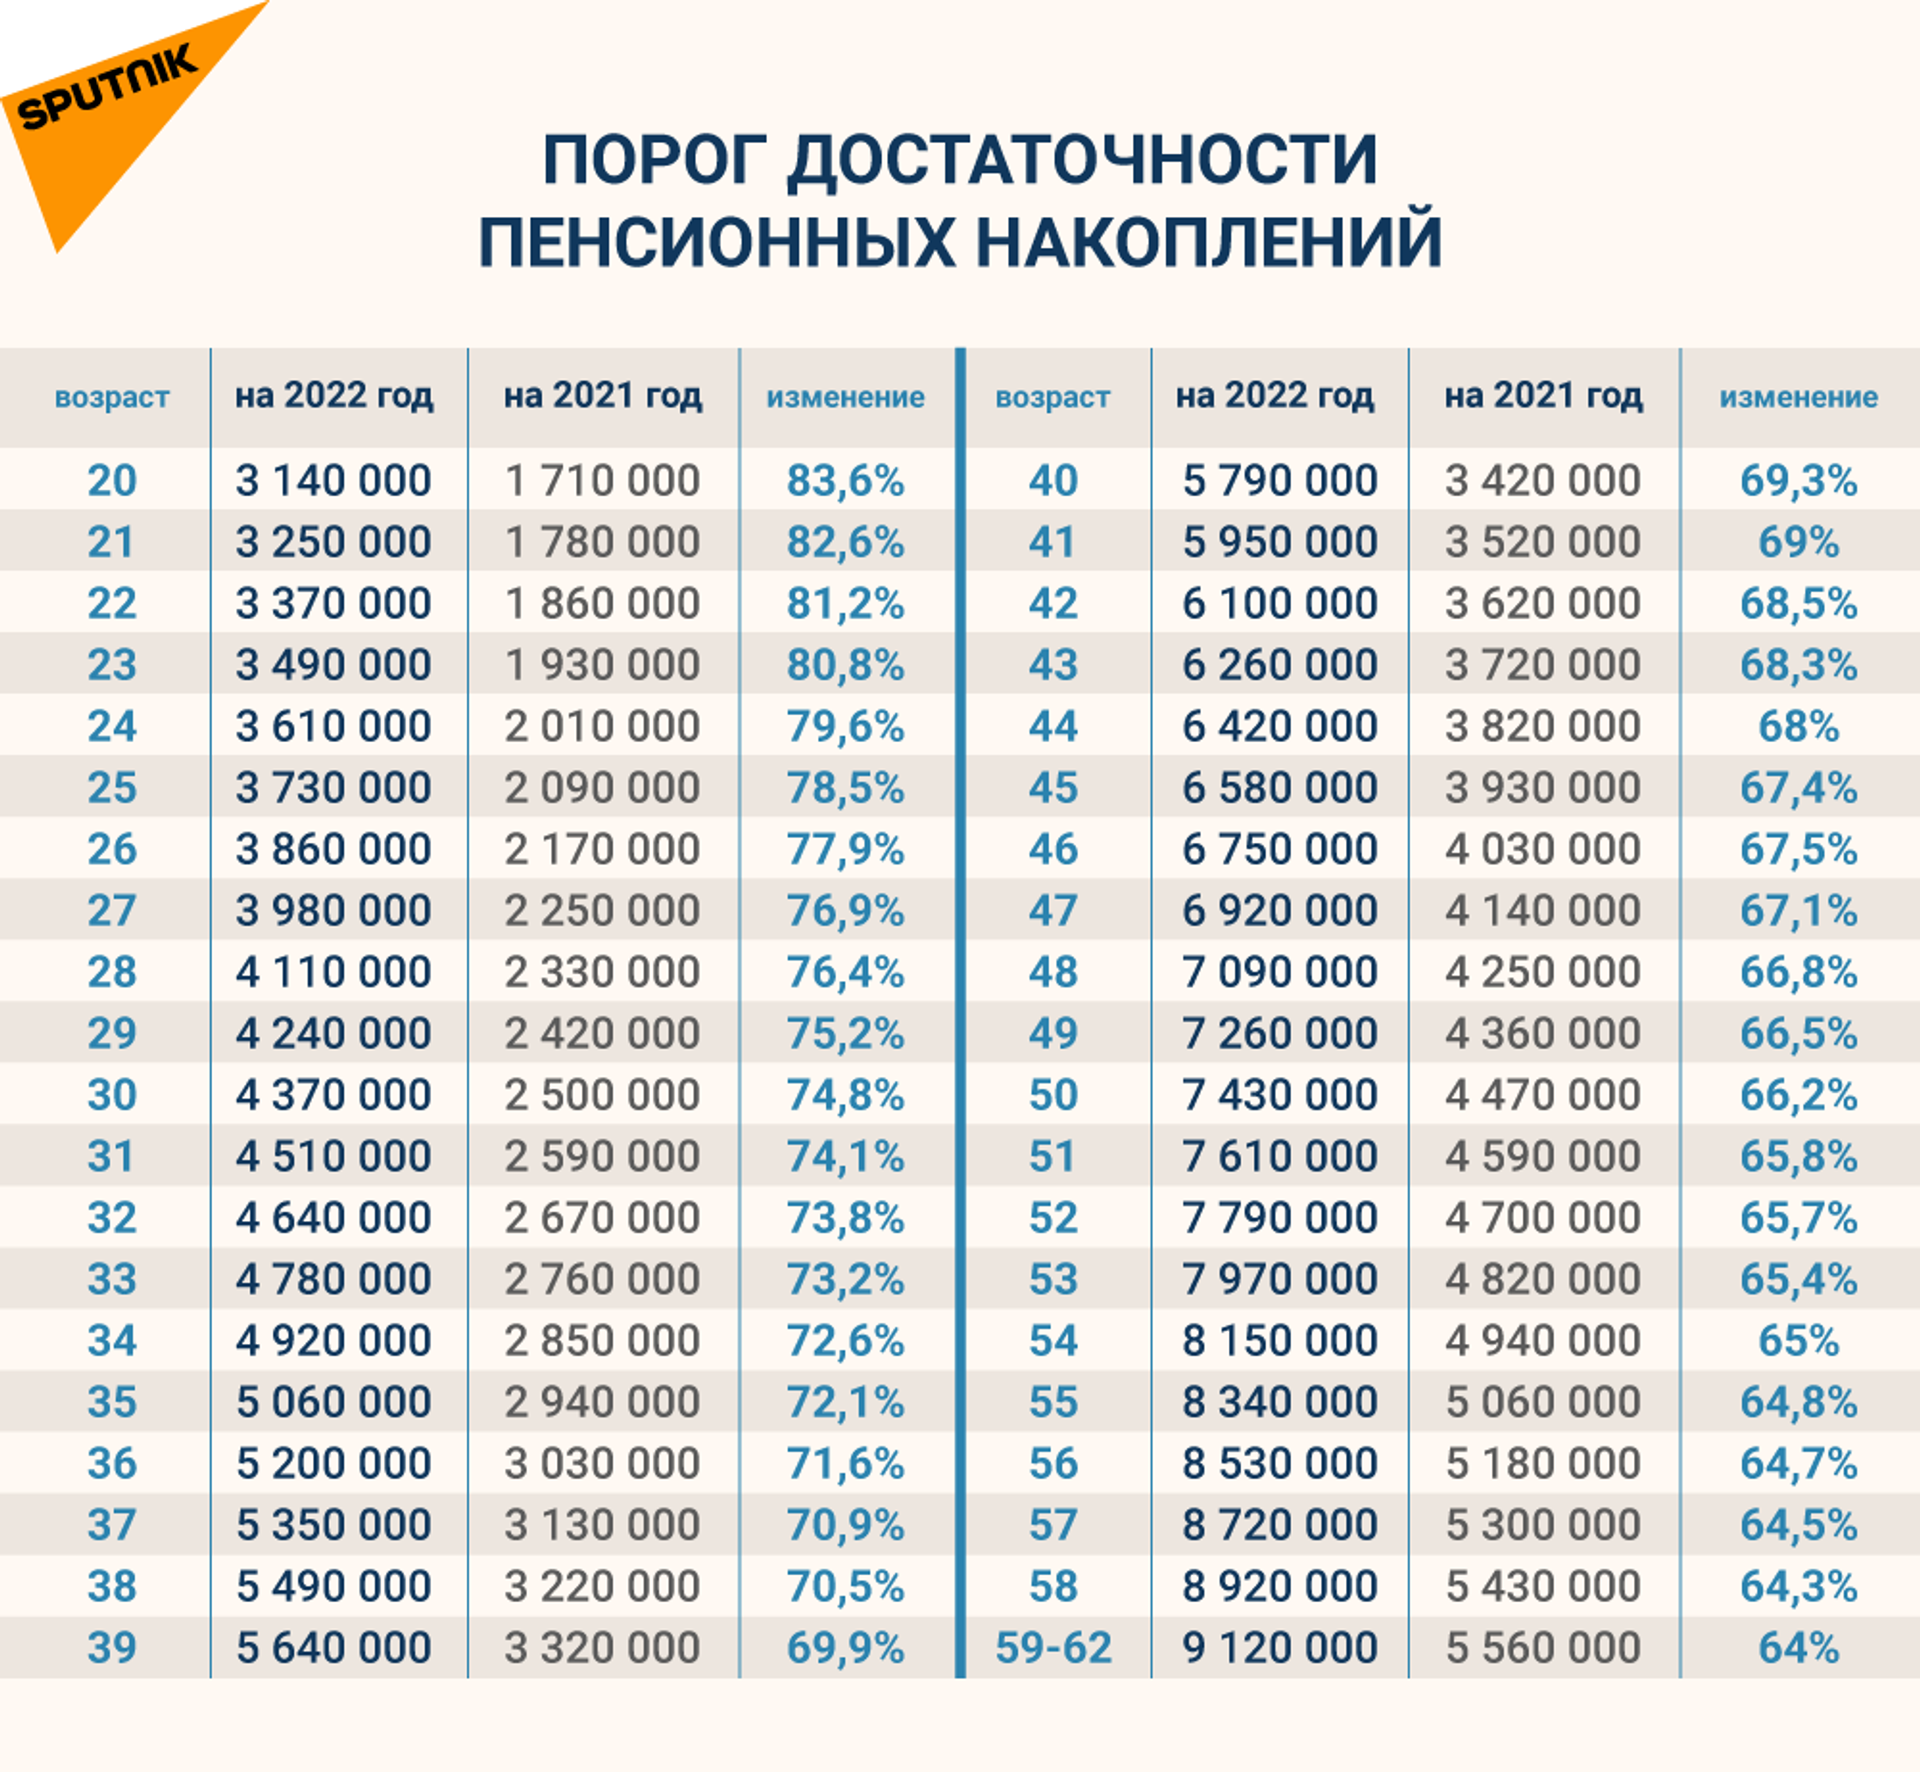 Как изменится порог достаточности пенсионных накоплений - 2021 и 2022 - Sputnik Казахстан, 1920, 01.02.2022